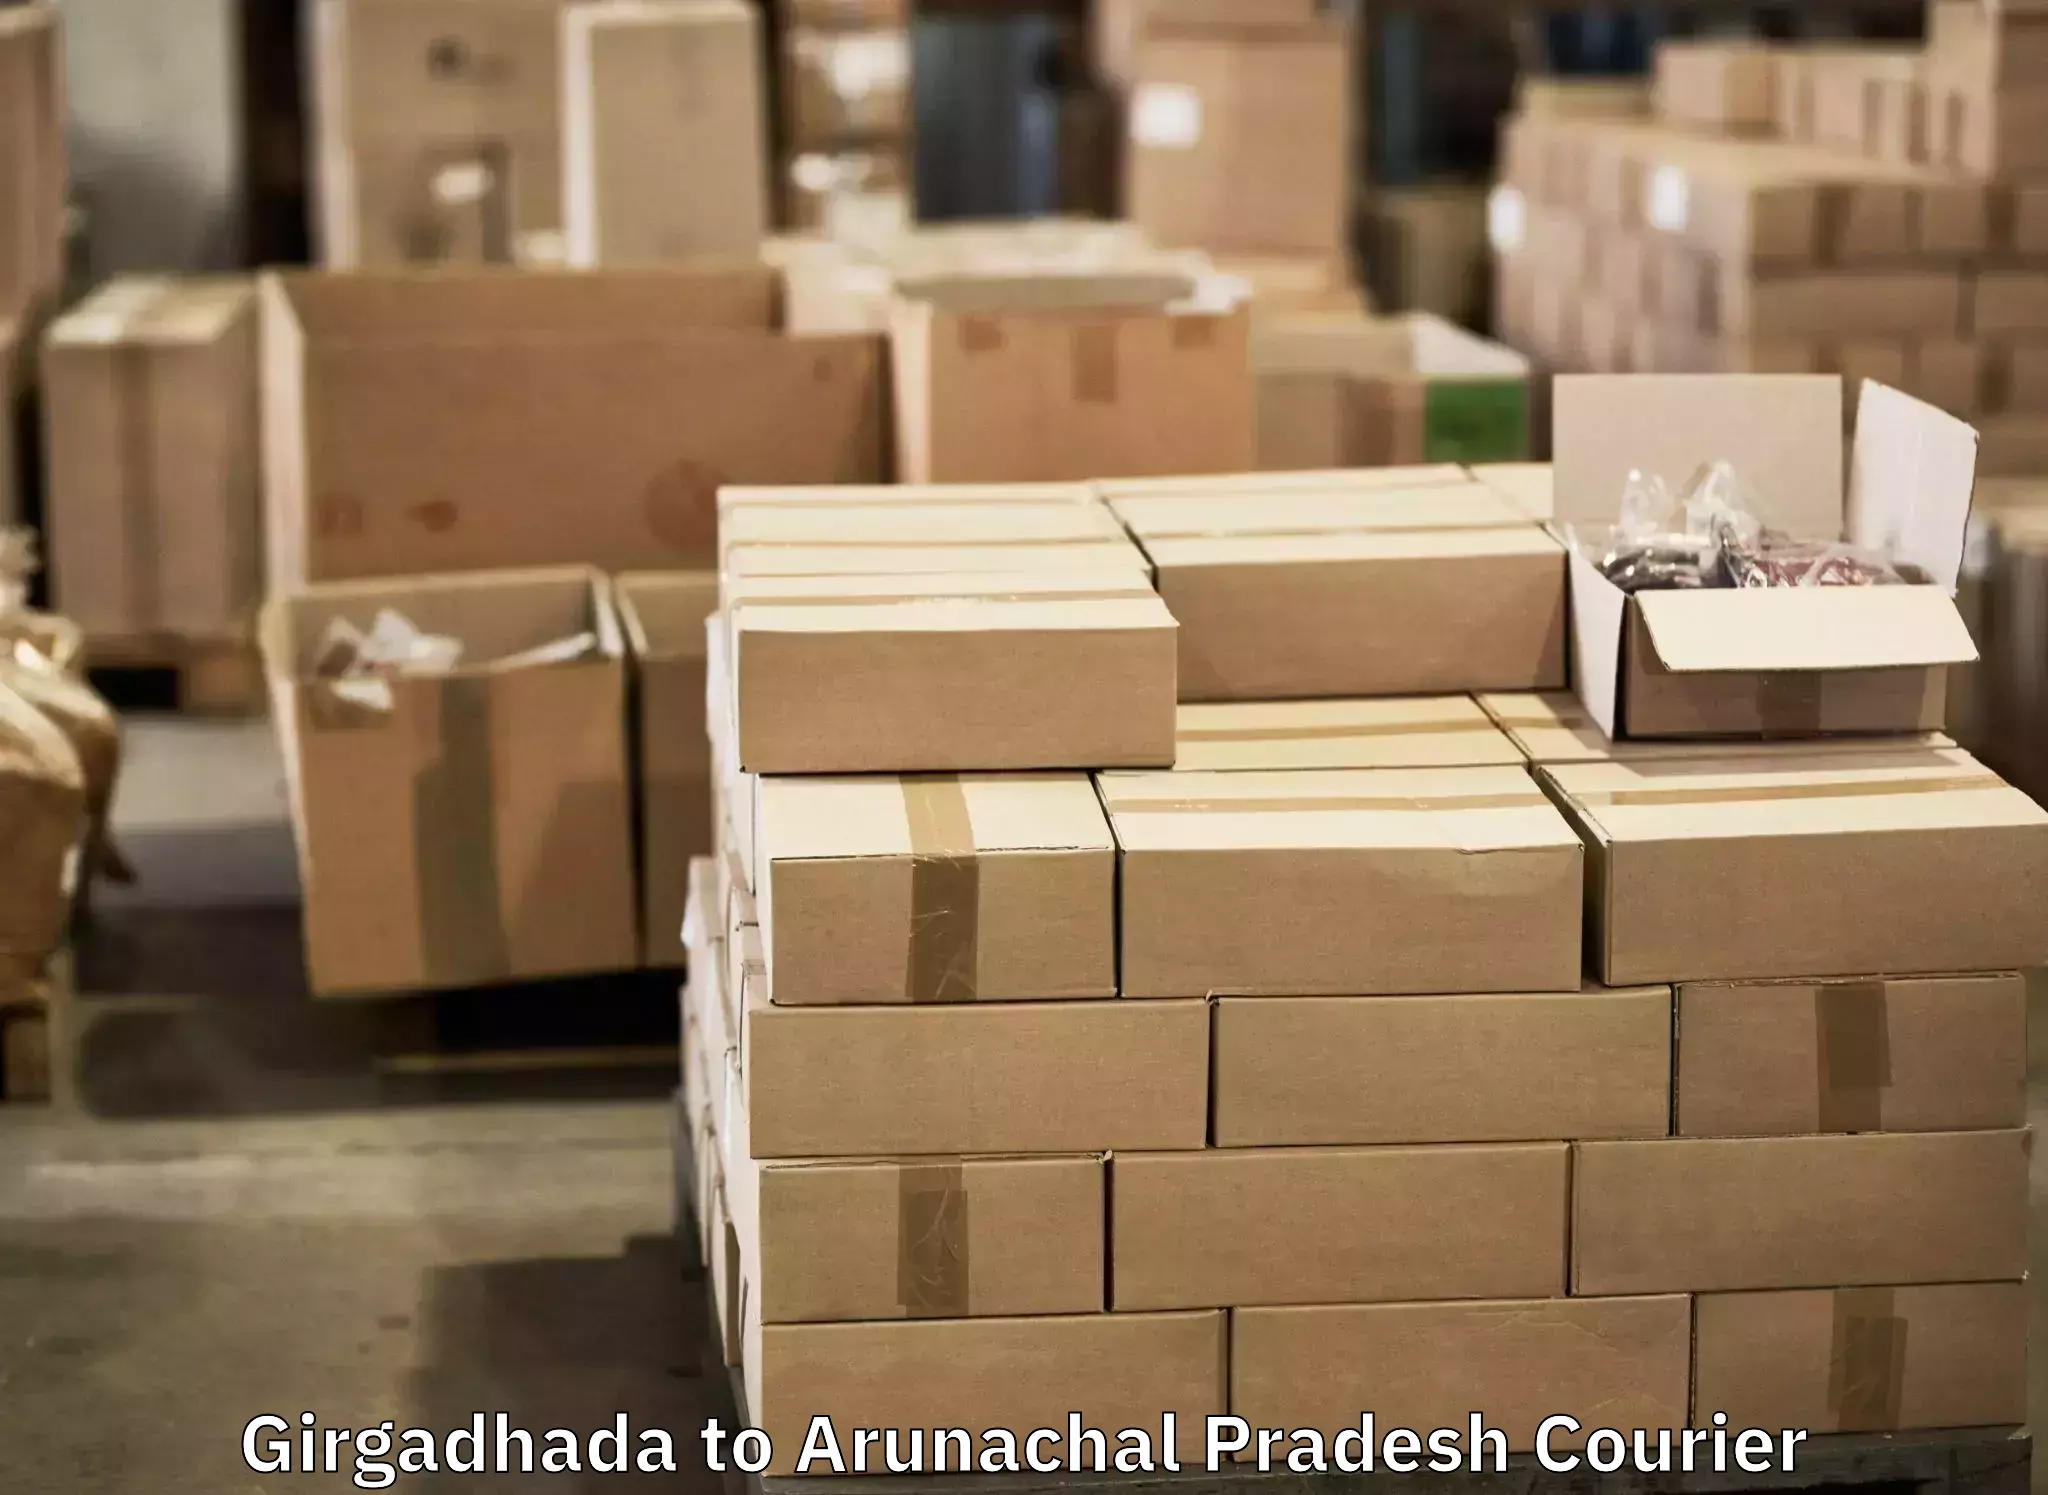 Baggage shipping service Girgadhada to Jairampur